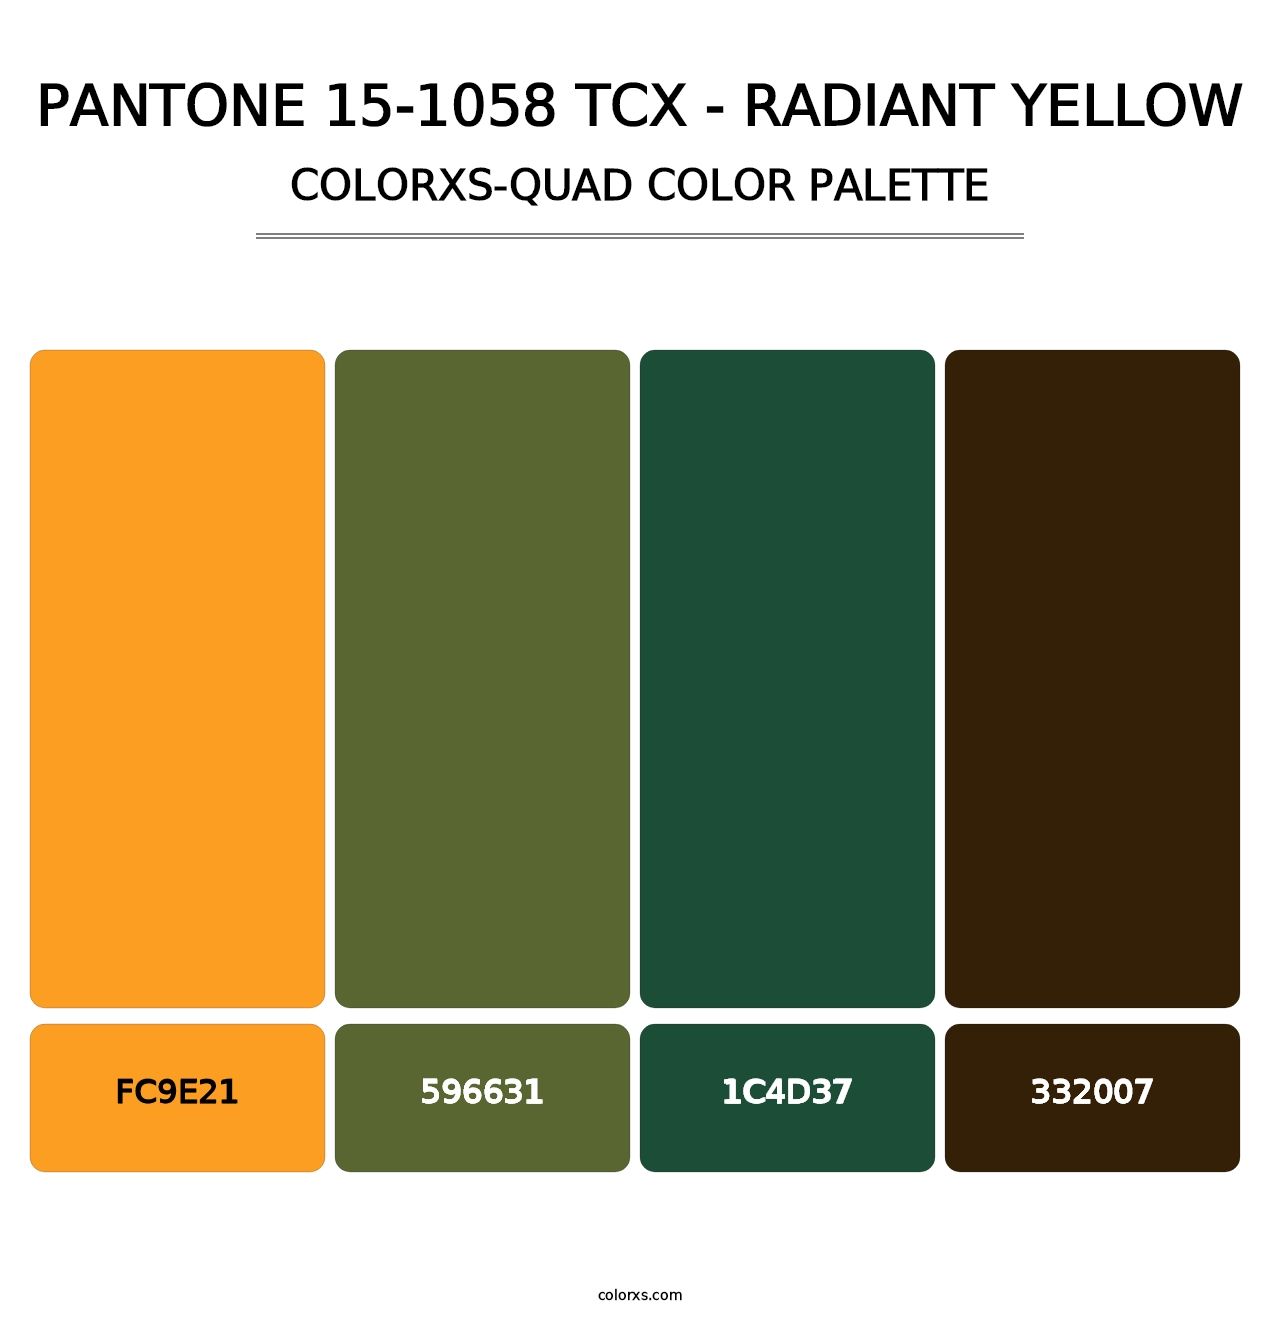 PANTONE 15-1058 TCX - Radiant Yellow - Colorxs Quad Palette